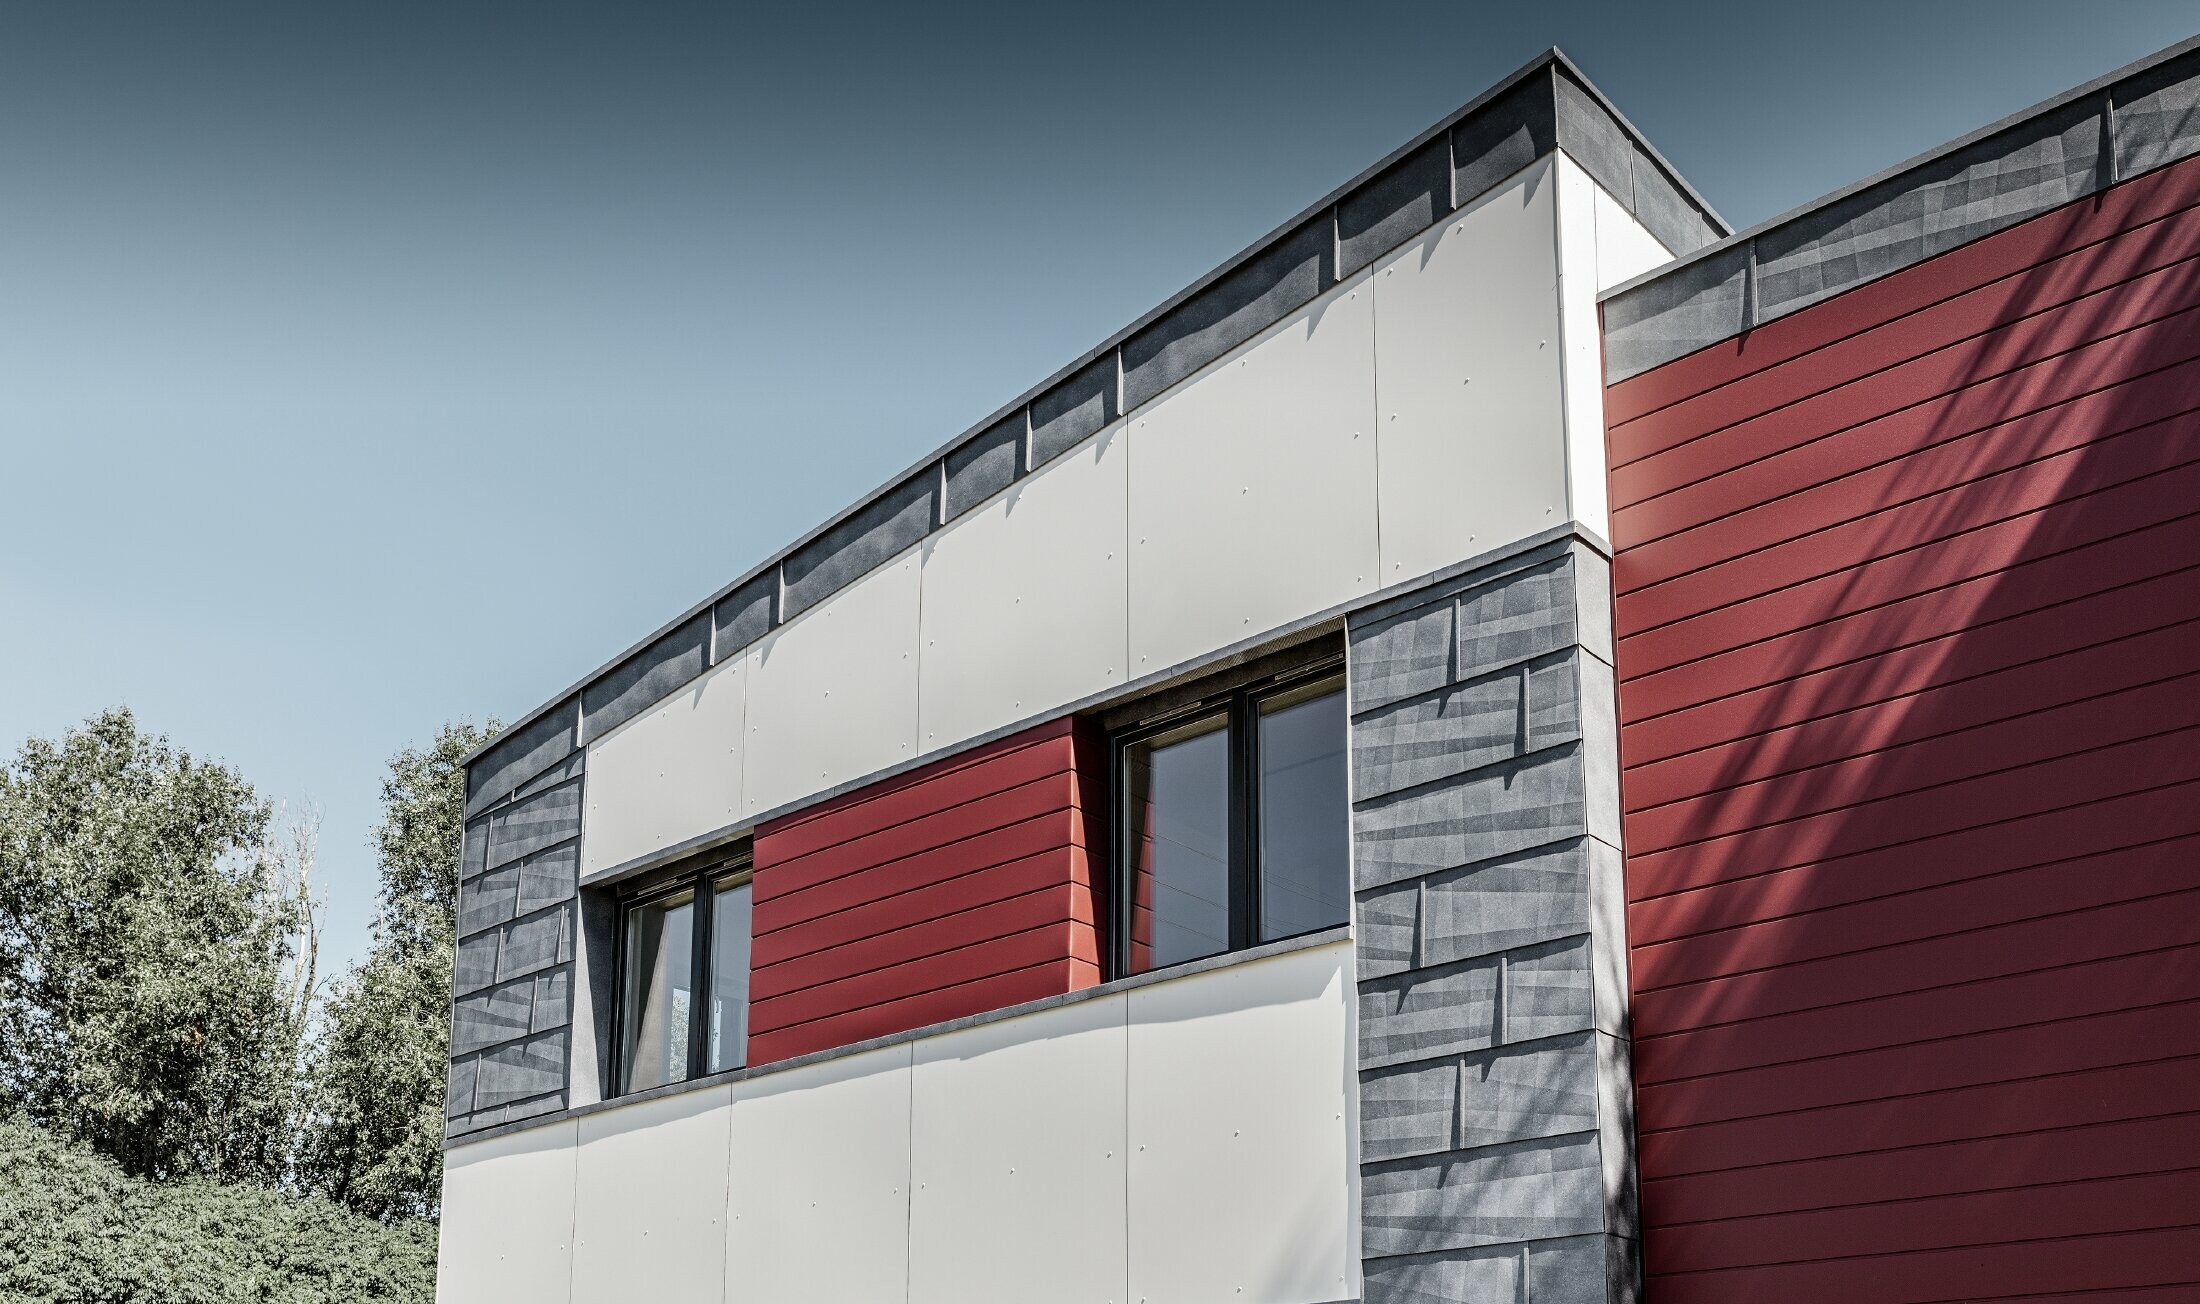 Moderná kancelárska budova s delenou hliníkovou fasádou vytvorenou z PREFA Siding v červenej, kamennošedej a bielej farbe, z PREFA fasádneho panelu FX.12 a z PREFA hliníkového kompozitného panela